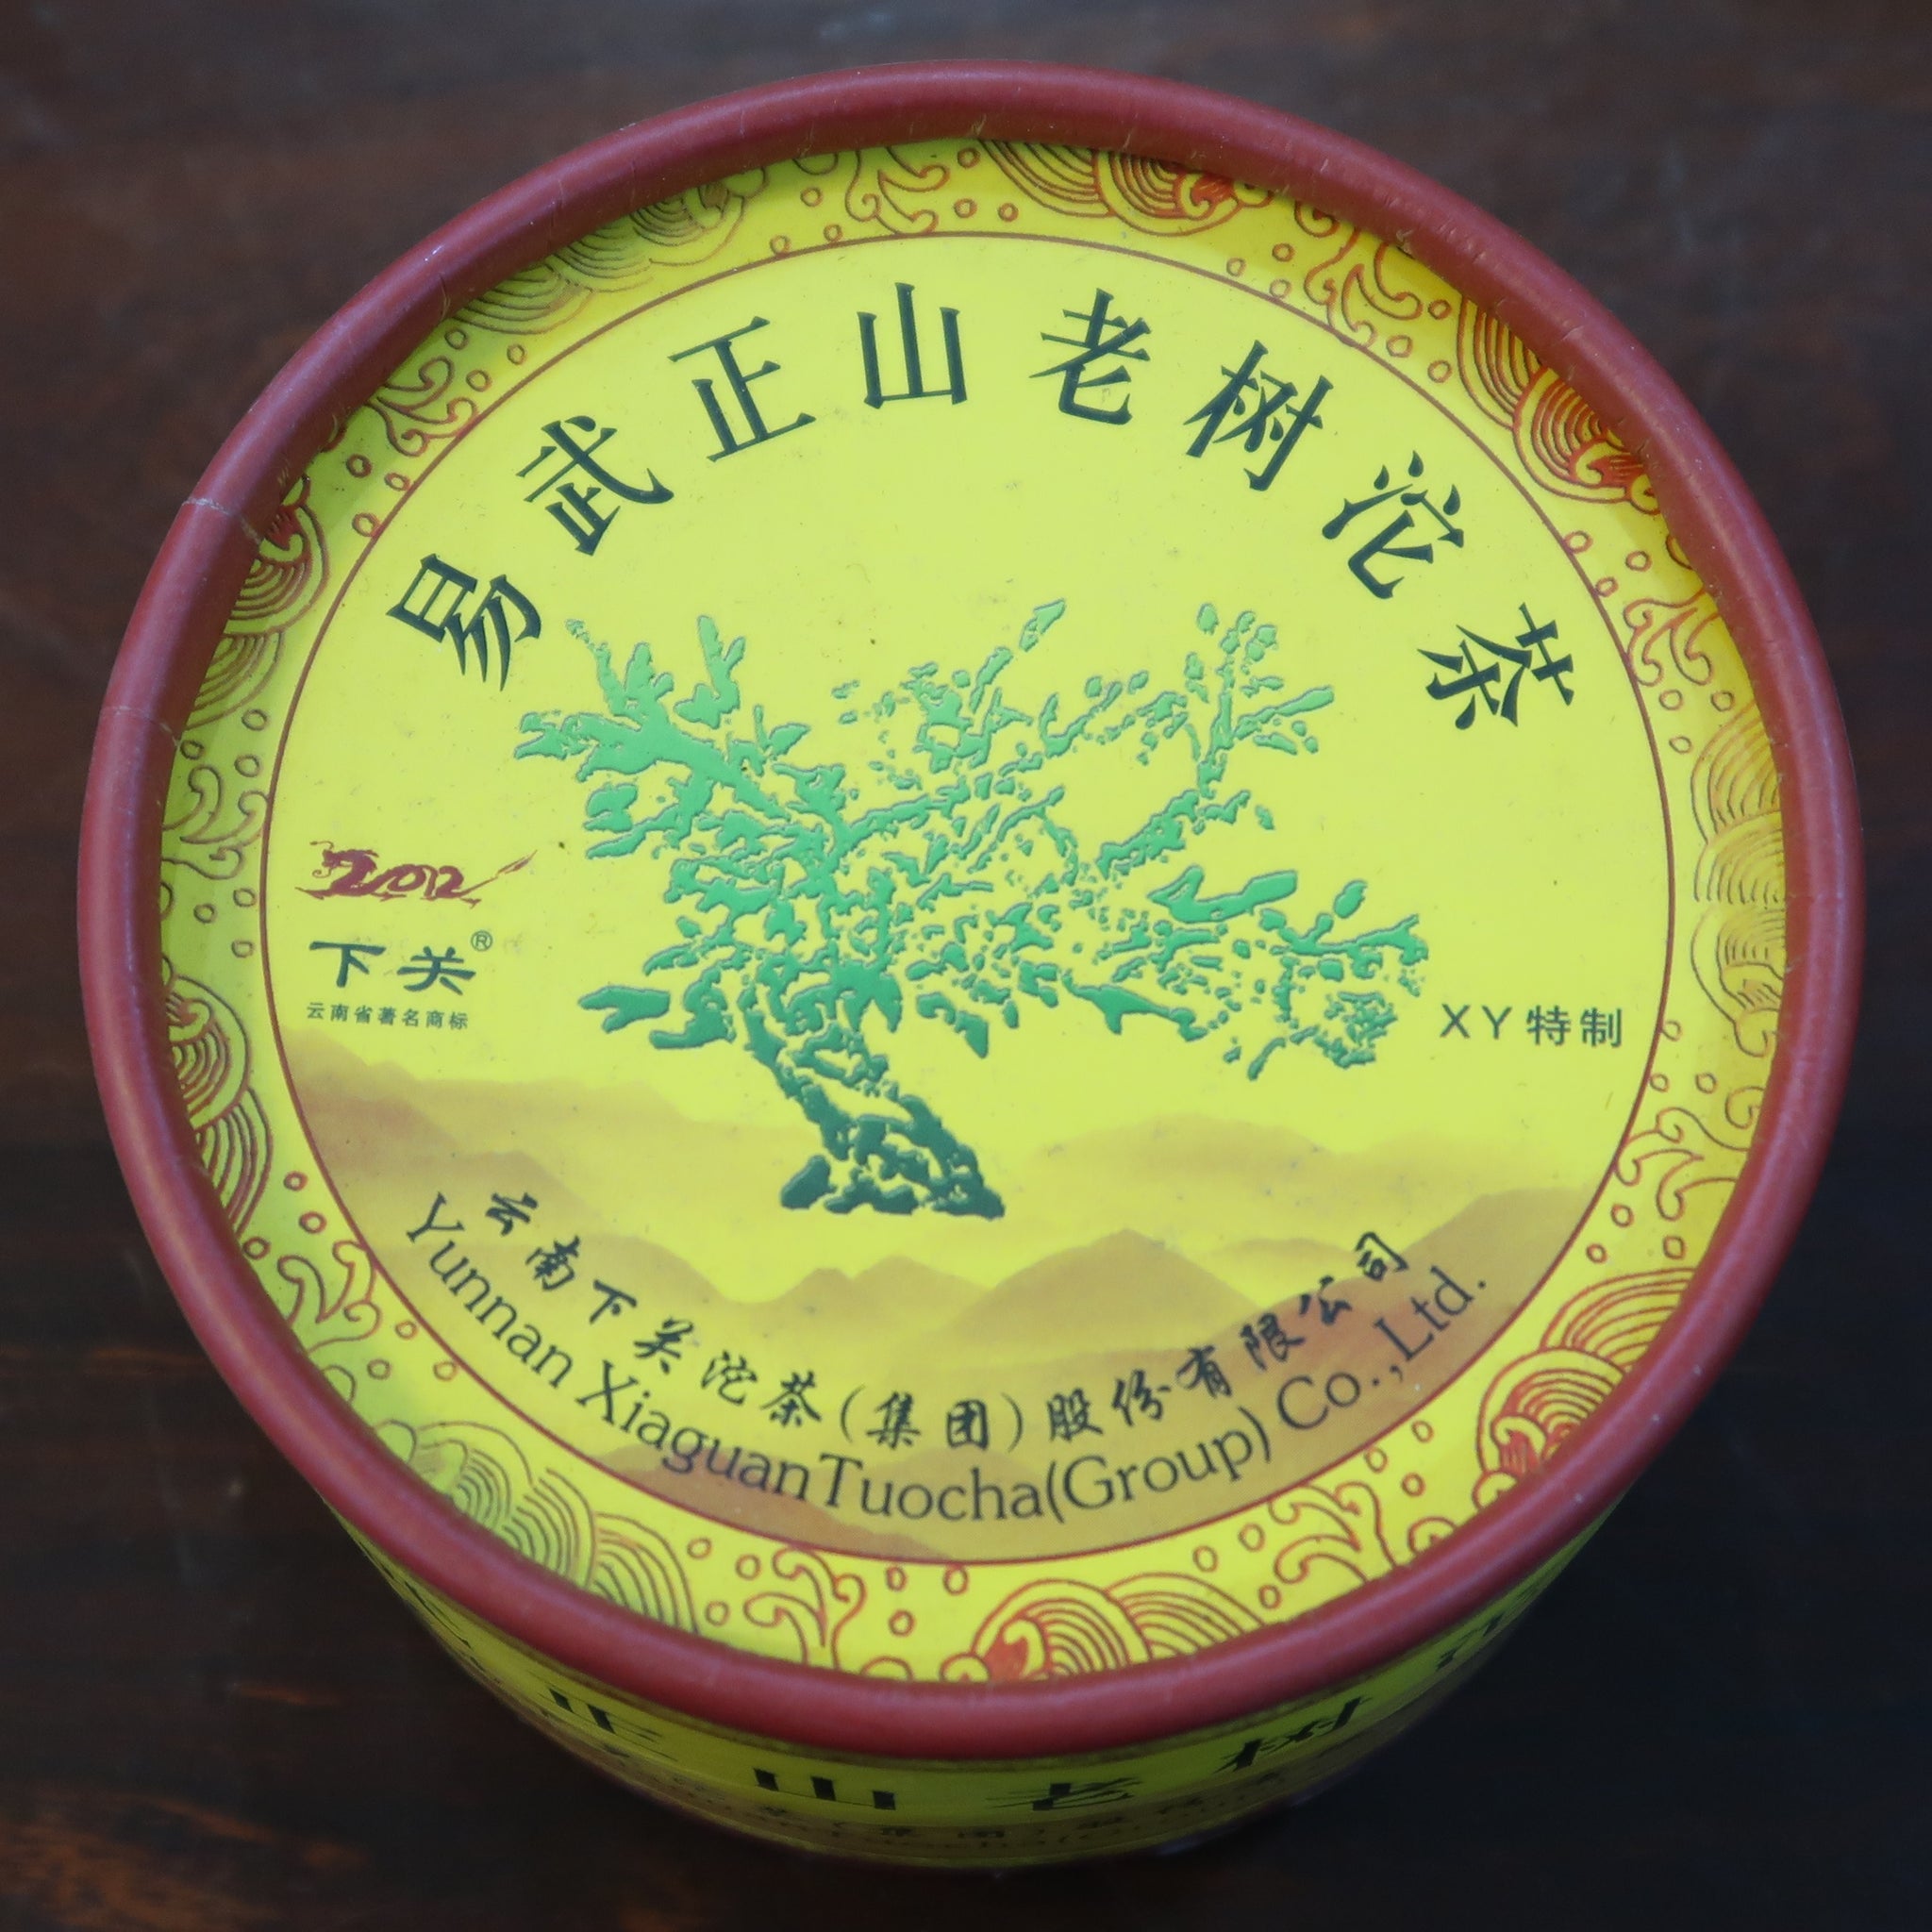 2012 Xiaguan Yiwu Zheng Shan Tuo Raw Puerh Tea